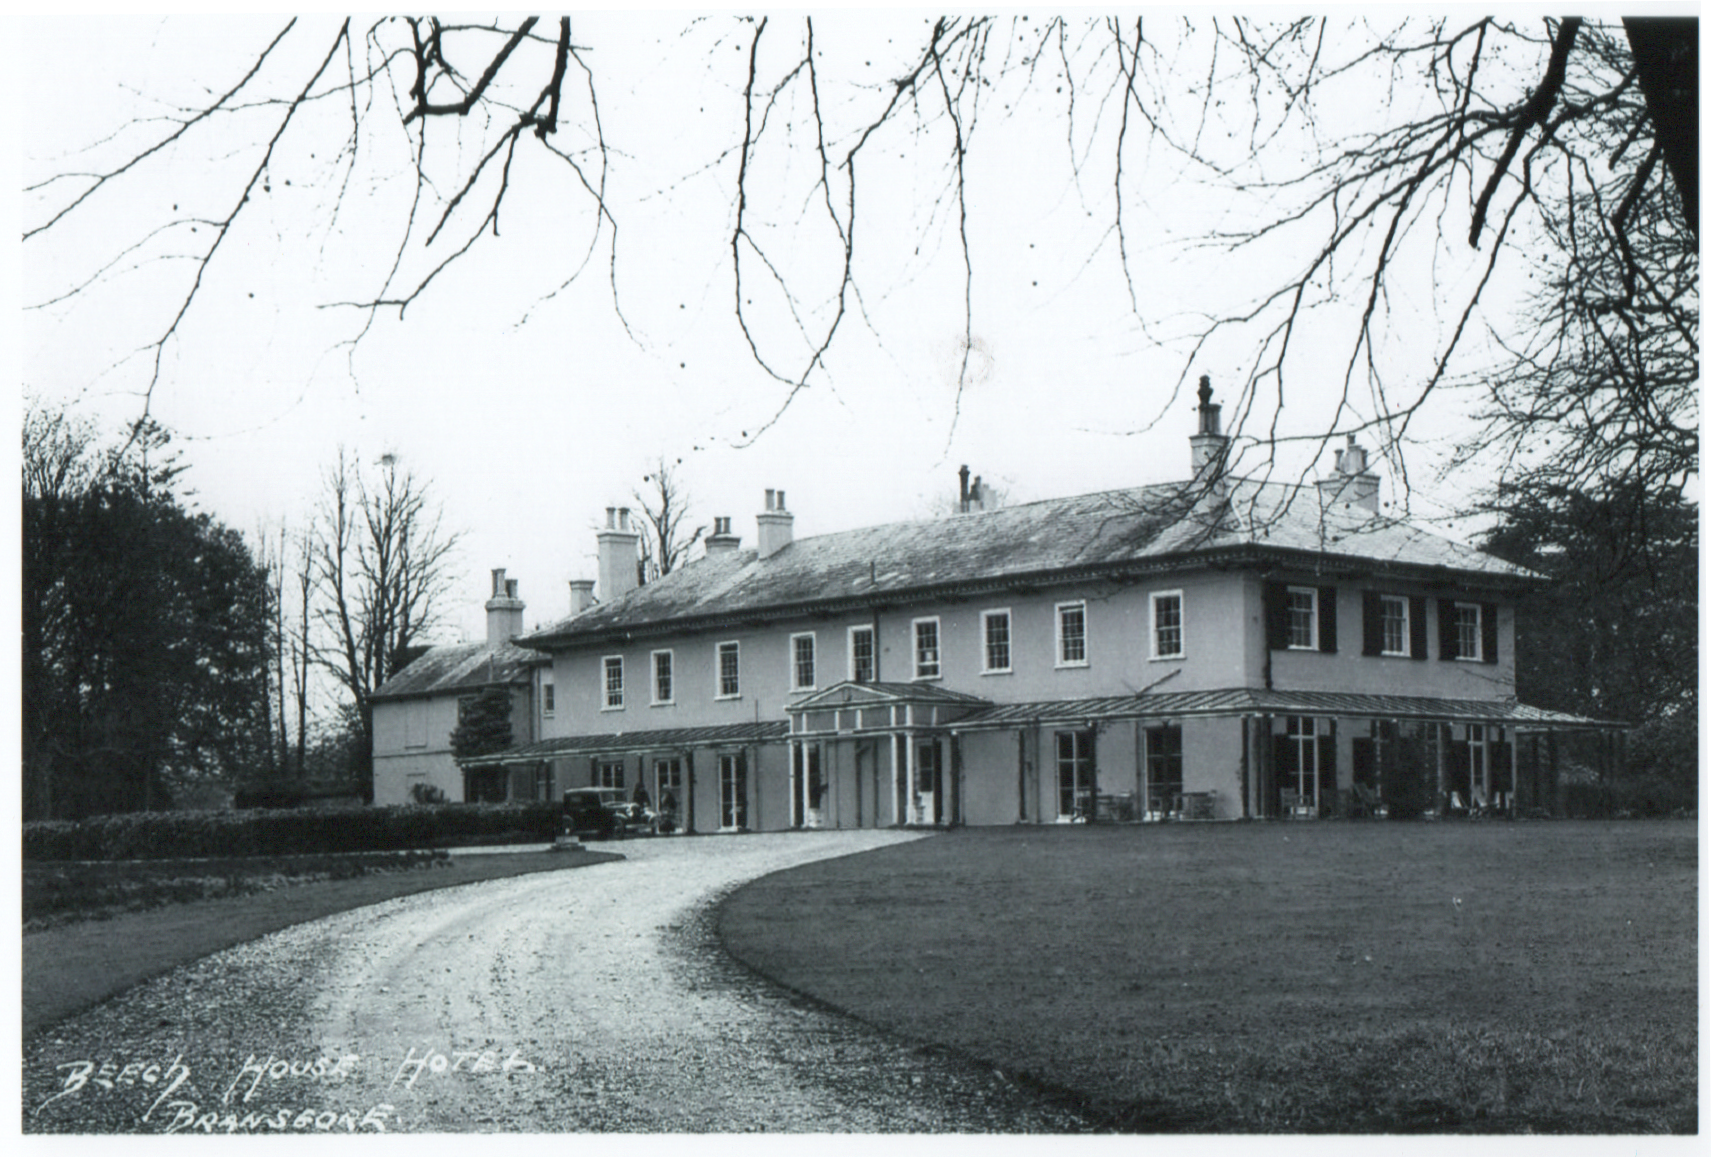 Beech House 1939